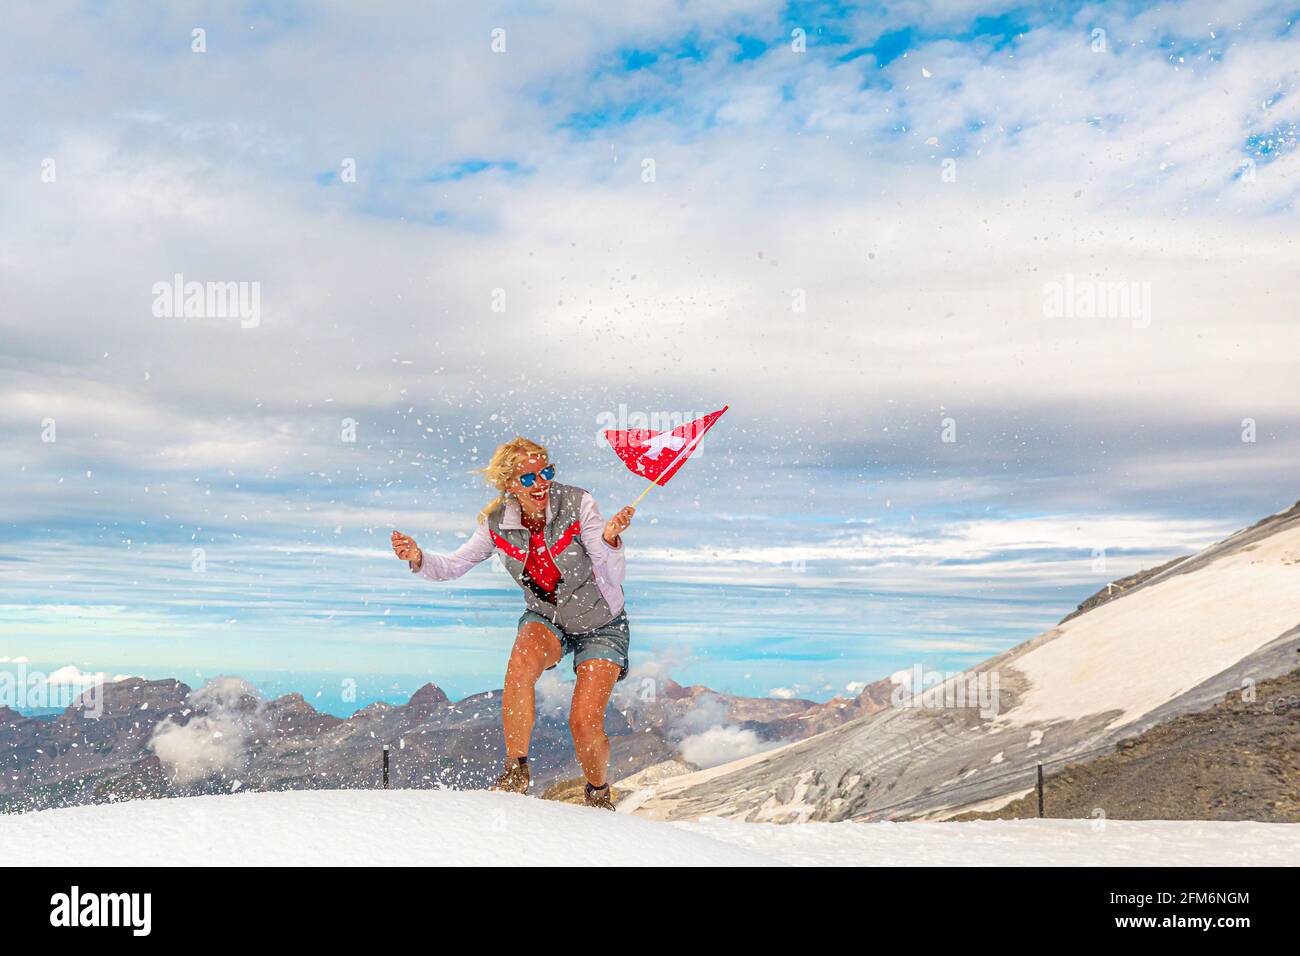 Femme trekking dans la tempête de neige avec un drapeau suisse. Sommet du glacier de Titlis dans les Alpes Uri à 3028 mètres. Cantons d'Obwalden et de Berne, Suisse Banque D'Images